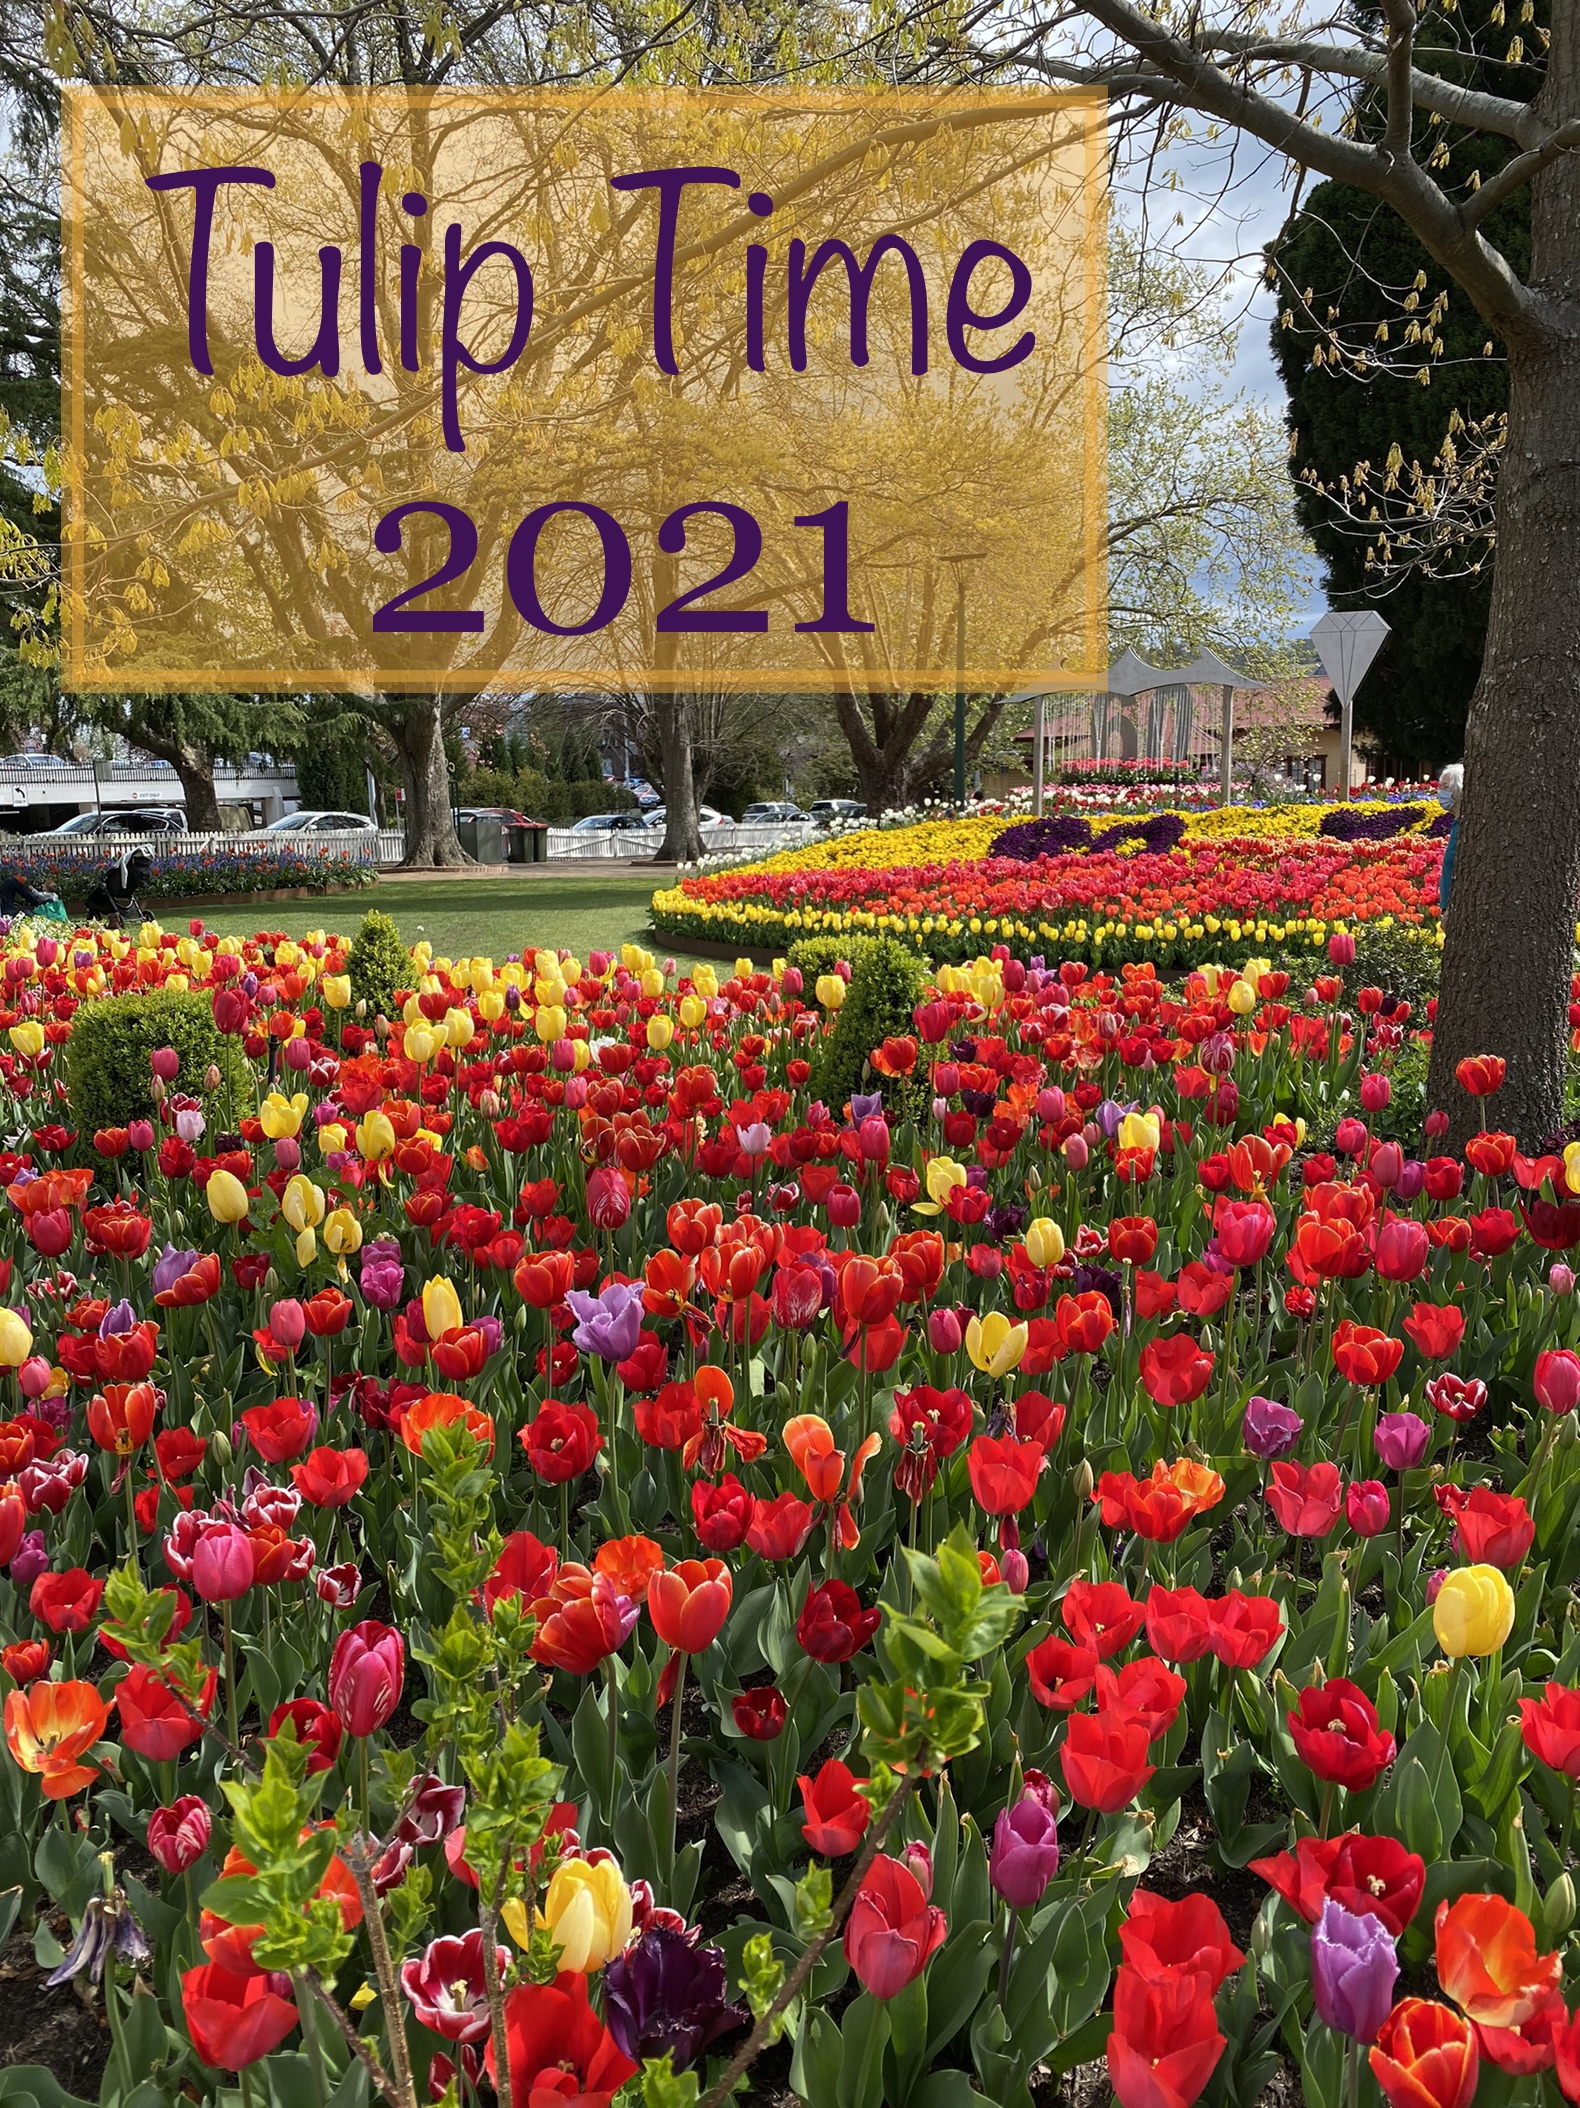 Tulip Time 2021